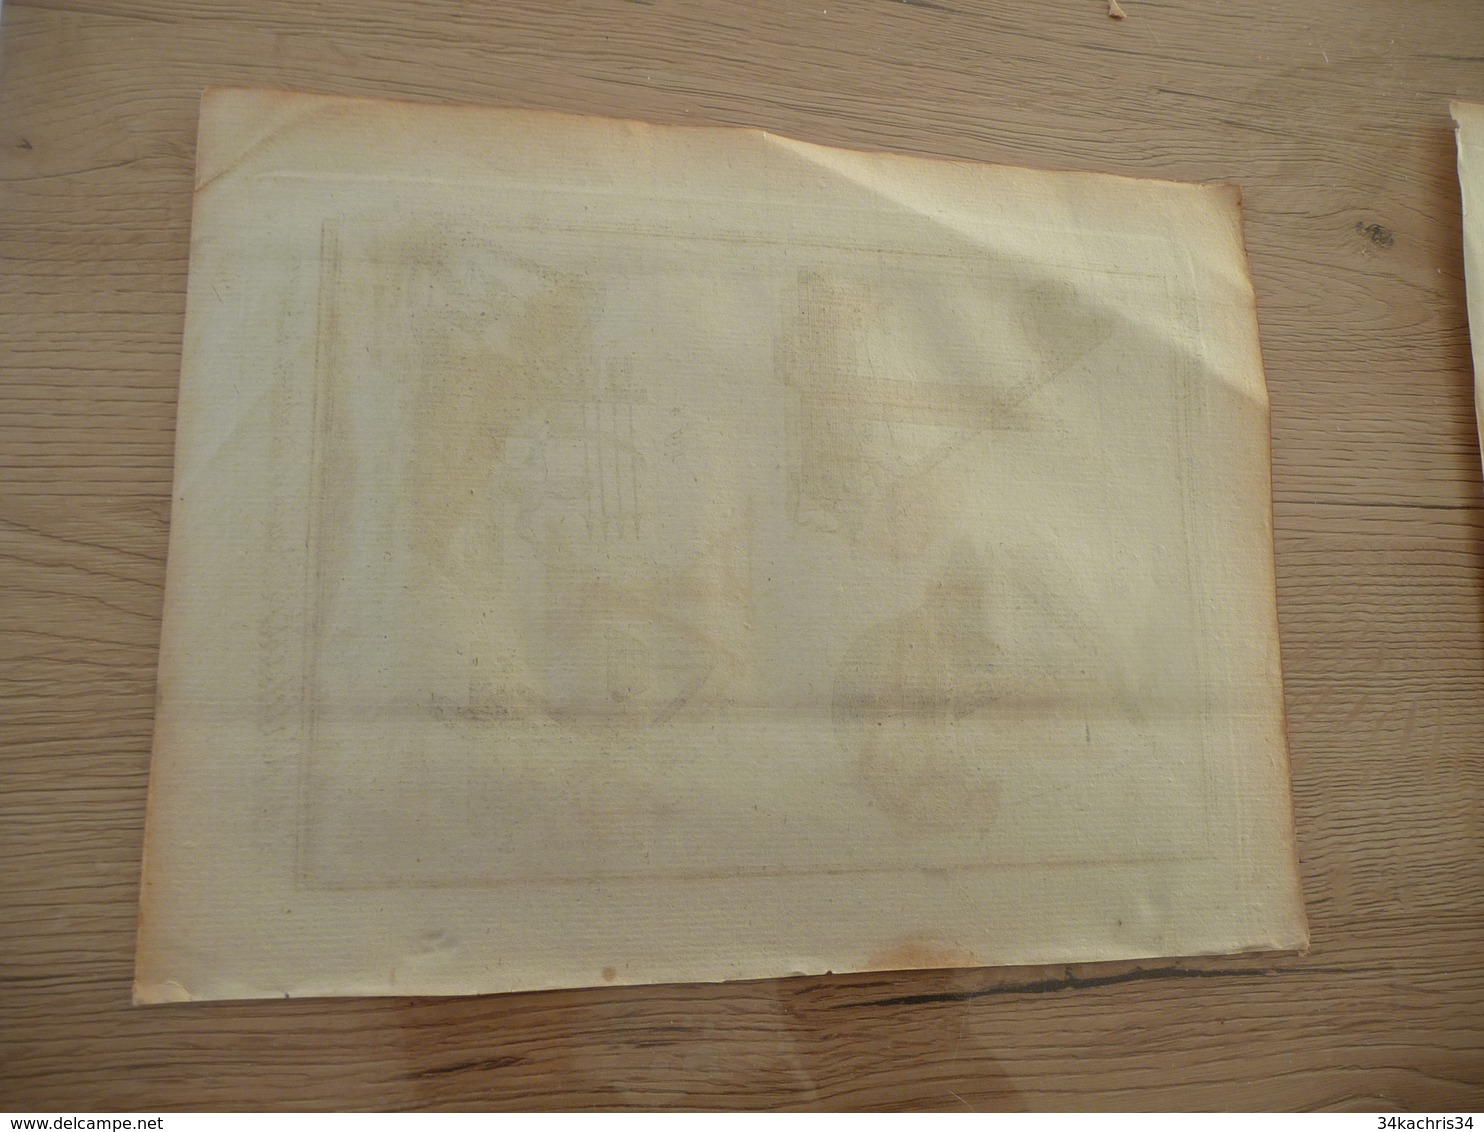 Rare Gravure Estampe Originale Diderot D'Alembert 1778  19.5 X 25.7 Arts Militaire Catapultes Armes Machines - Documentos